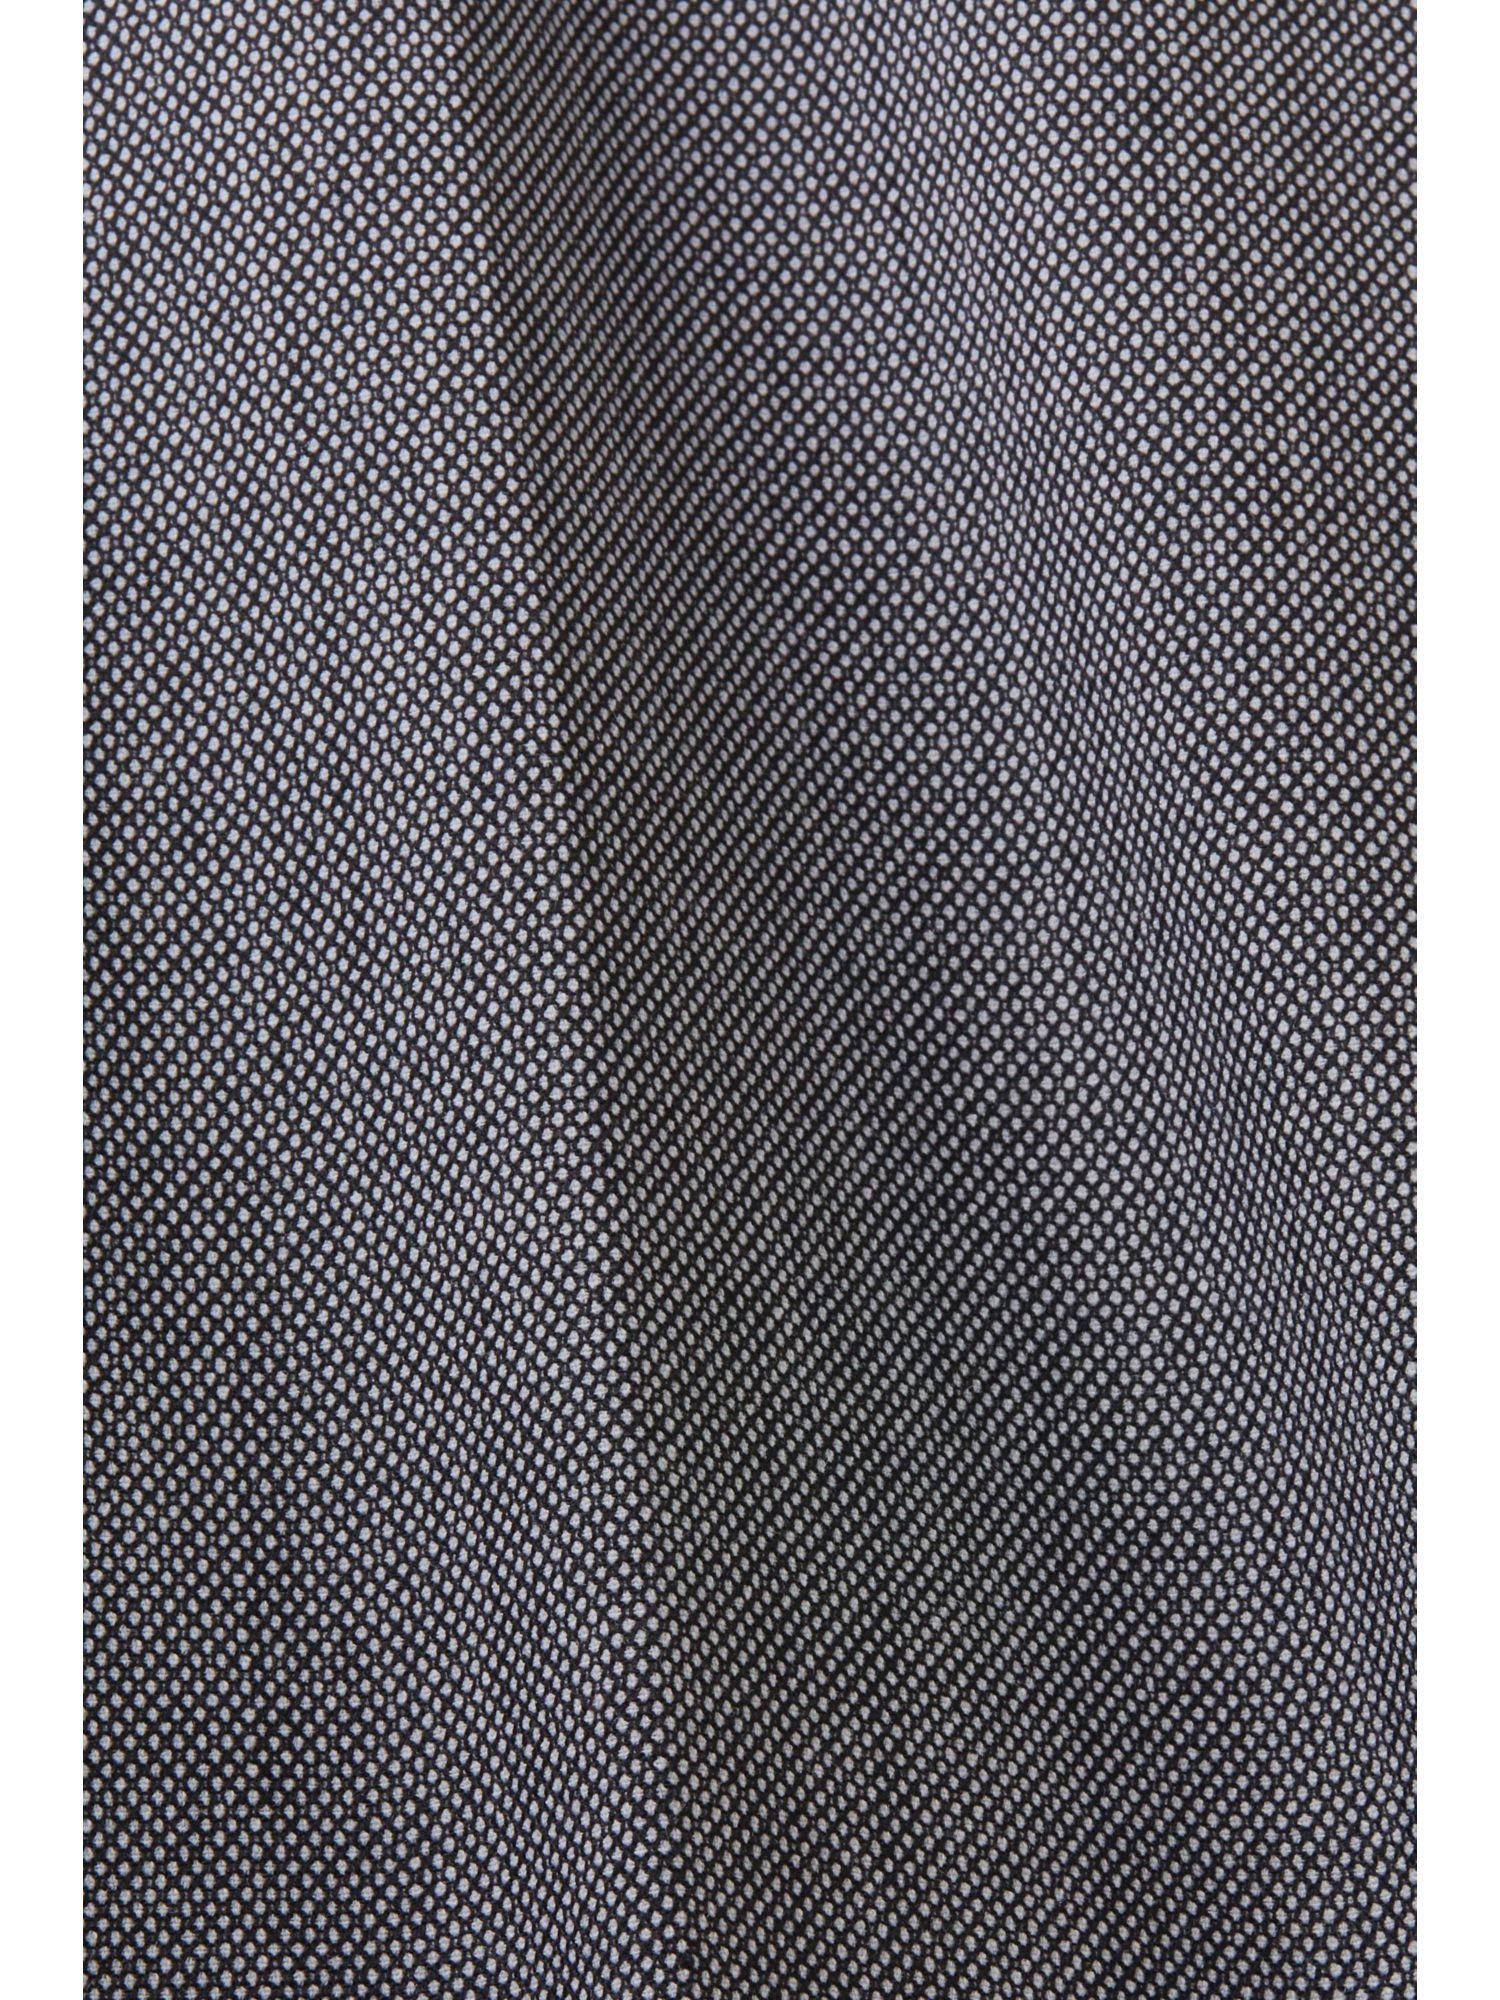 Match: & Anzughose Esprit Birdseye-Muster mit Mix Anzughose BLACK Collection